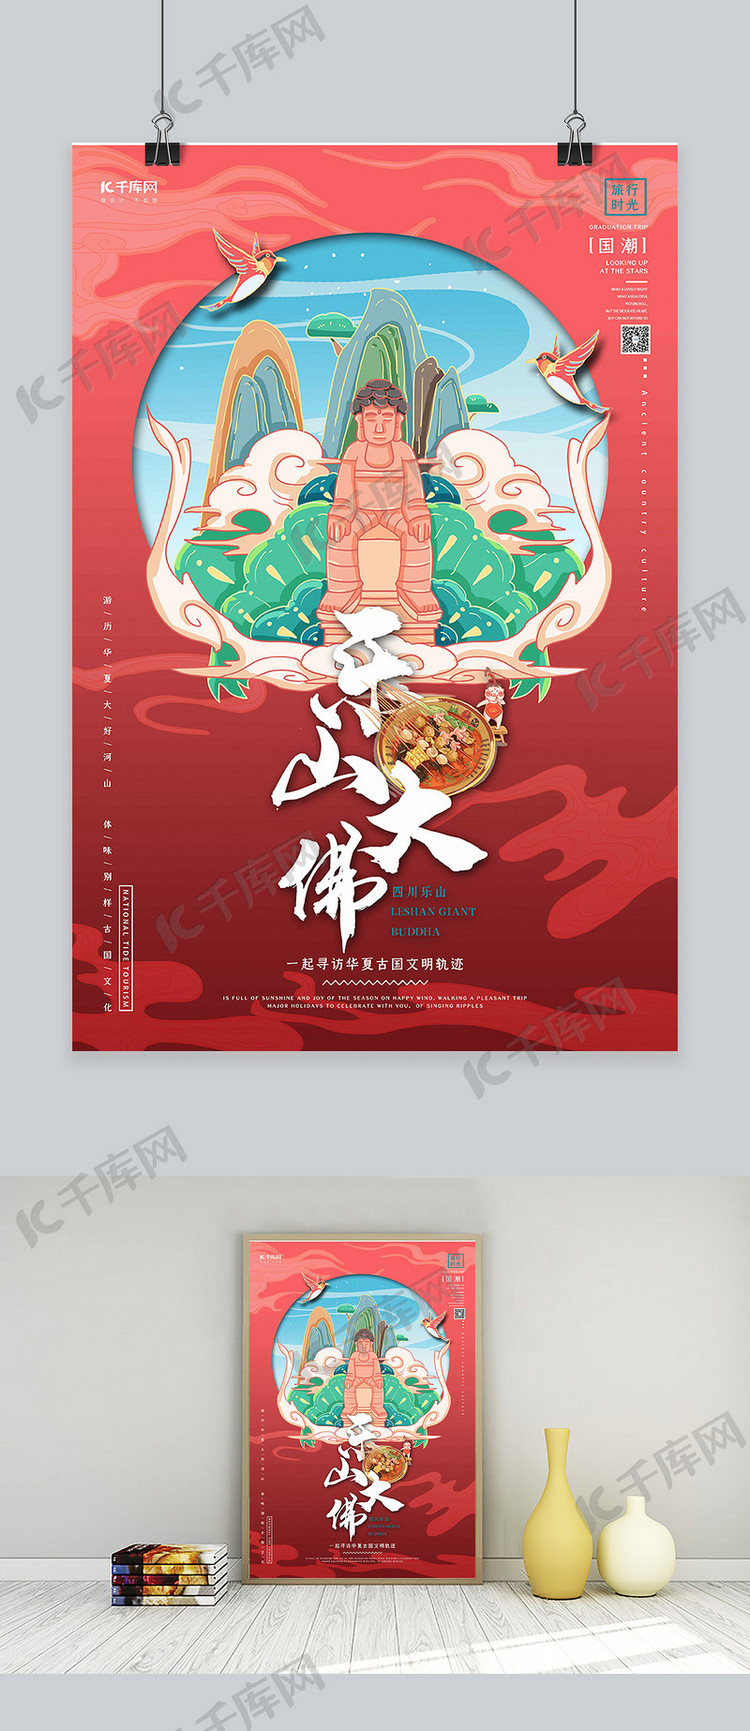 中国地标旅行时光之乐山大佛国潮风格插画海报